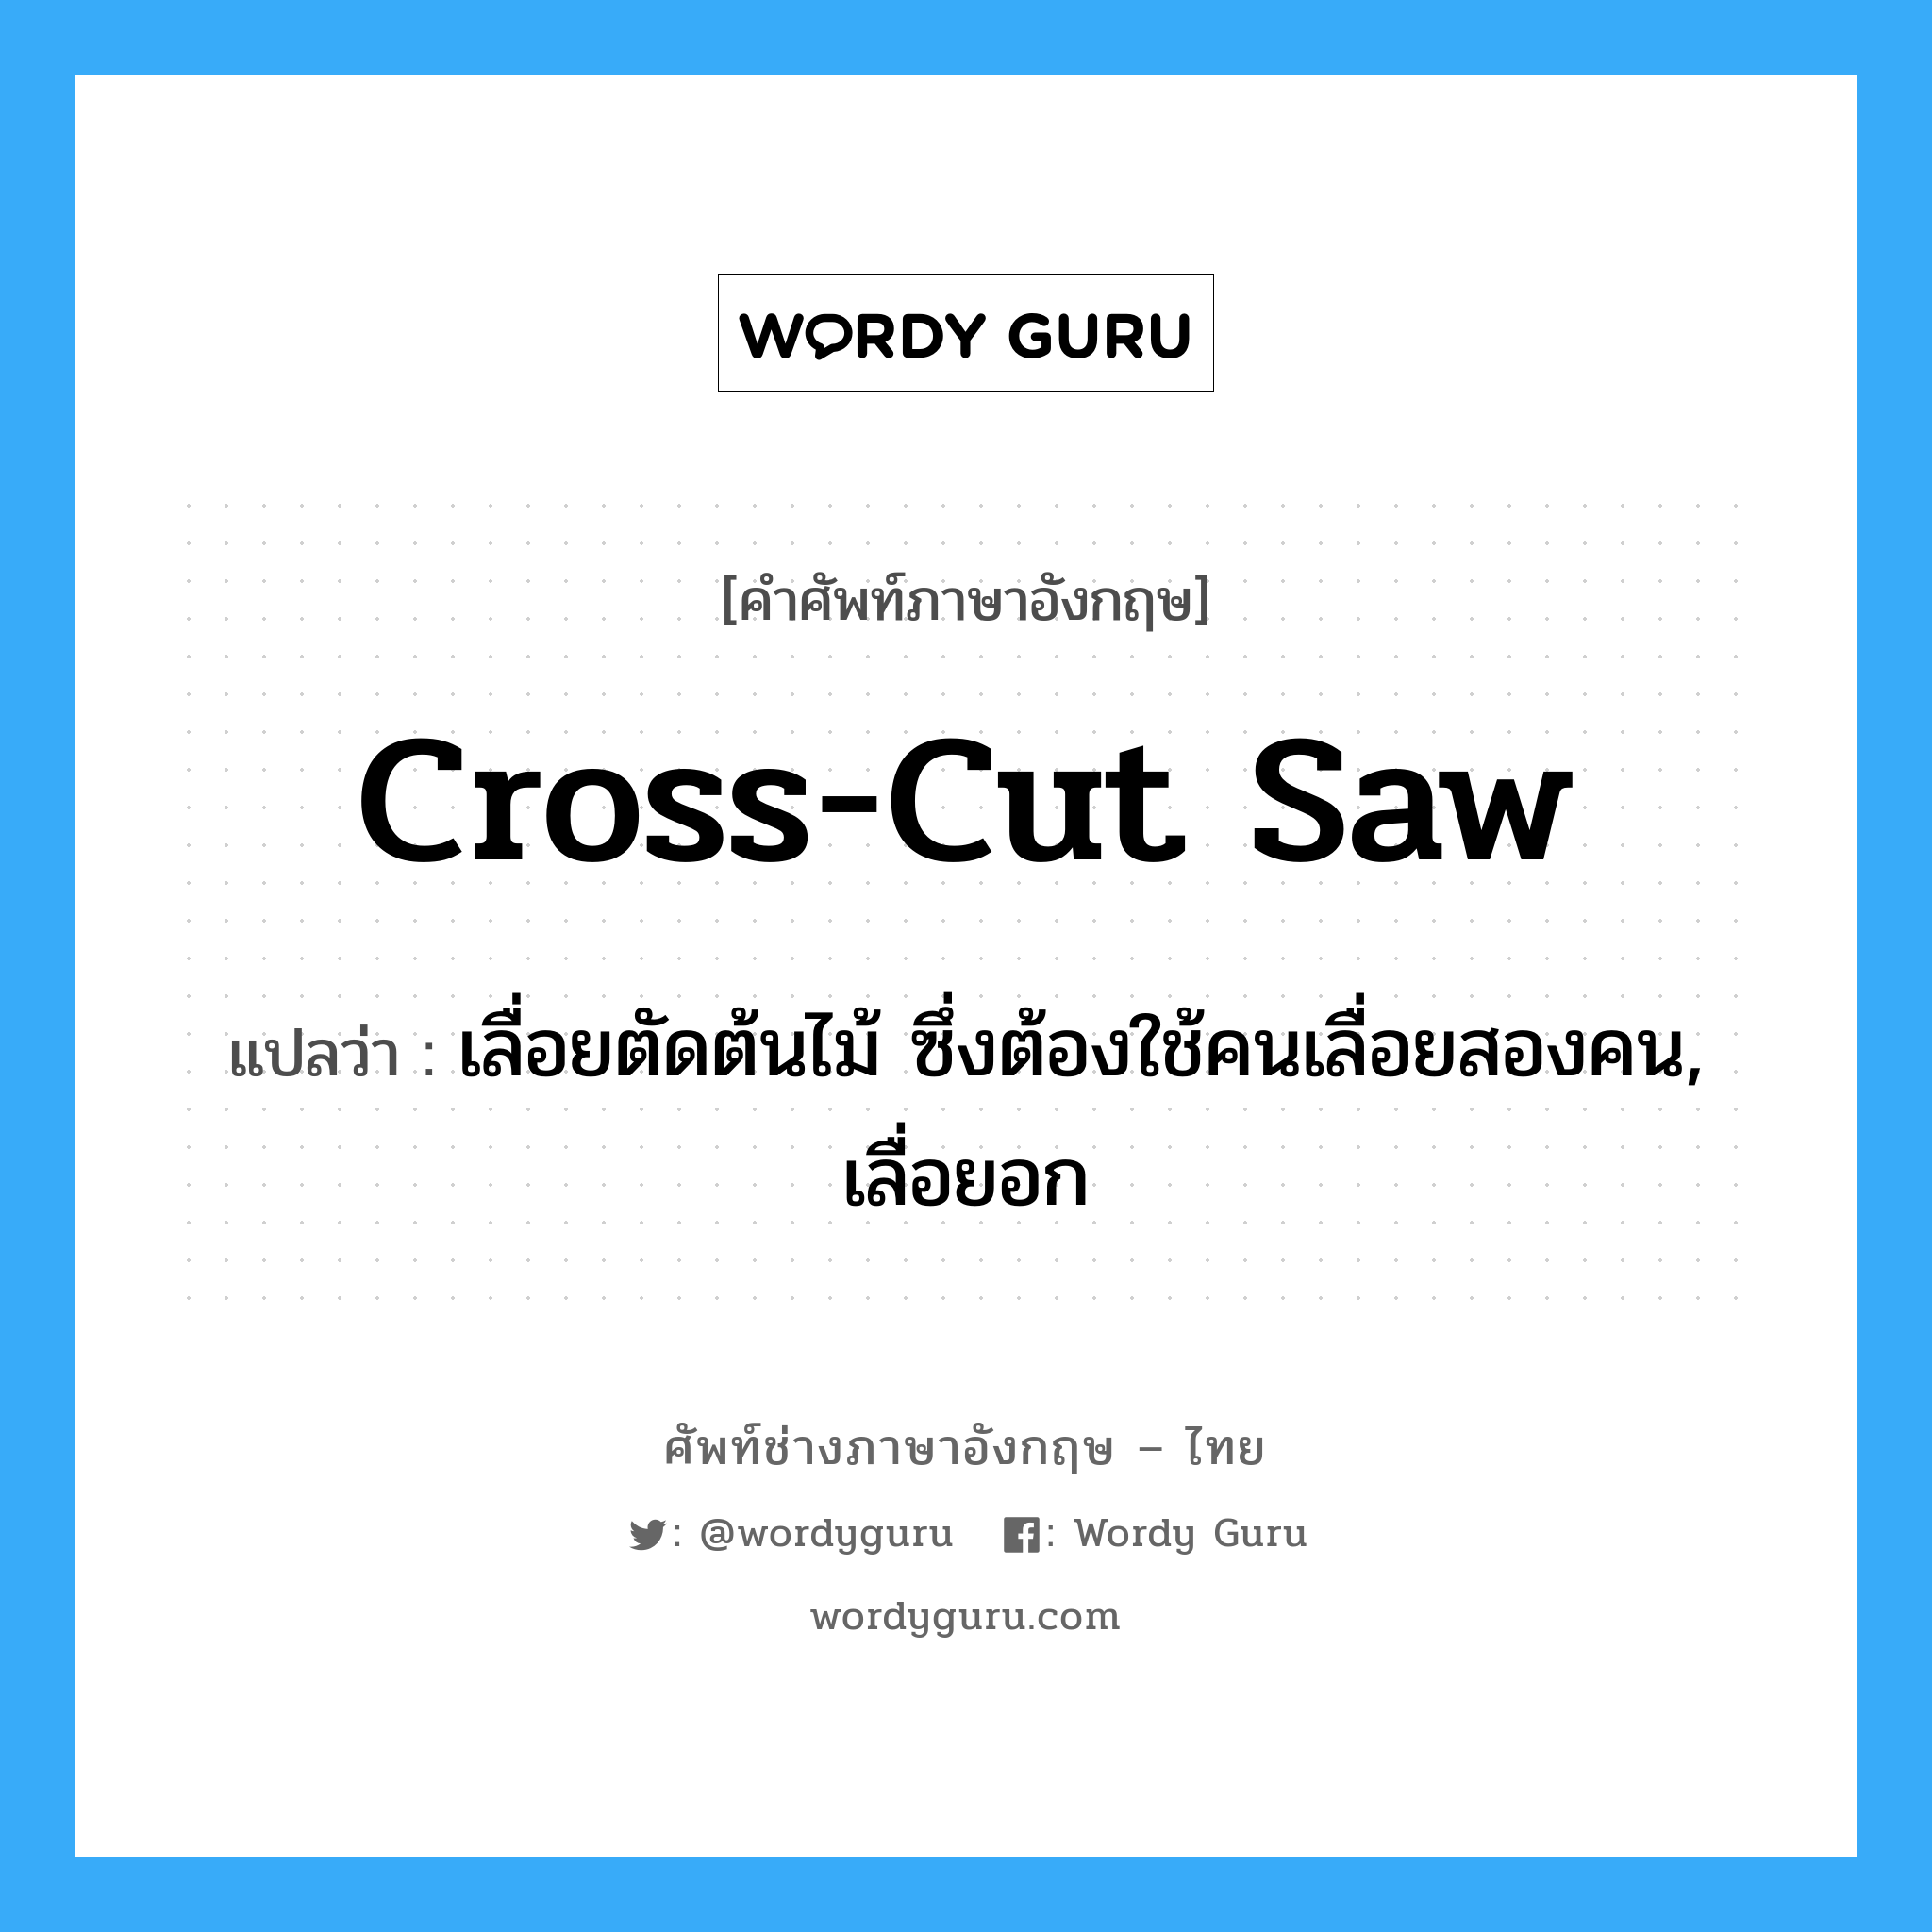 cross cut saw แปลว่า?, คำศัพท์ช่างภาษาอังกฤษ - ไทย cross-cut saw คำศัพท์ภาษาอังกฤษ cross-cut saw แปลว่า เลื่อยตัดต้นไม้ ซึ่งต้องใช้คนเลื่อยสองคน, เลื่อยอก